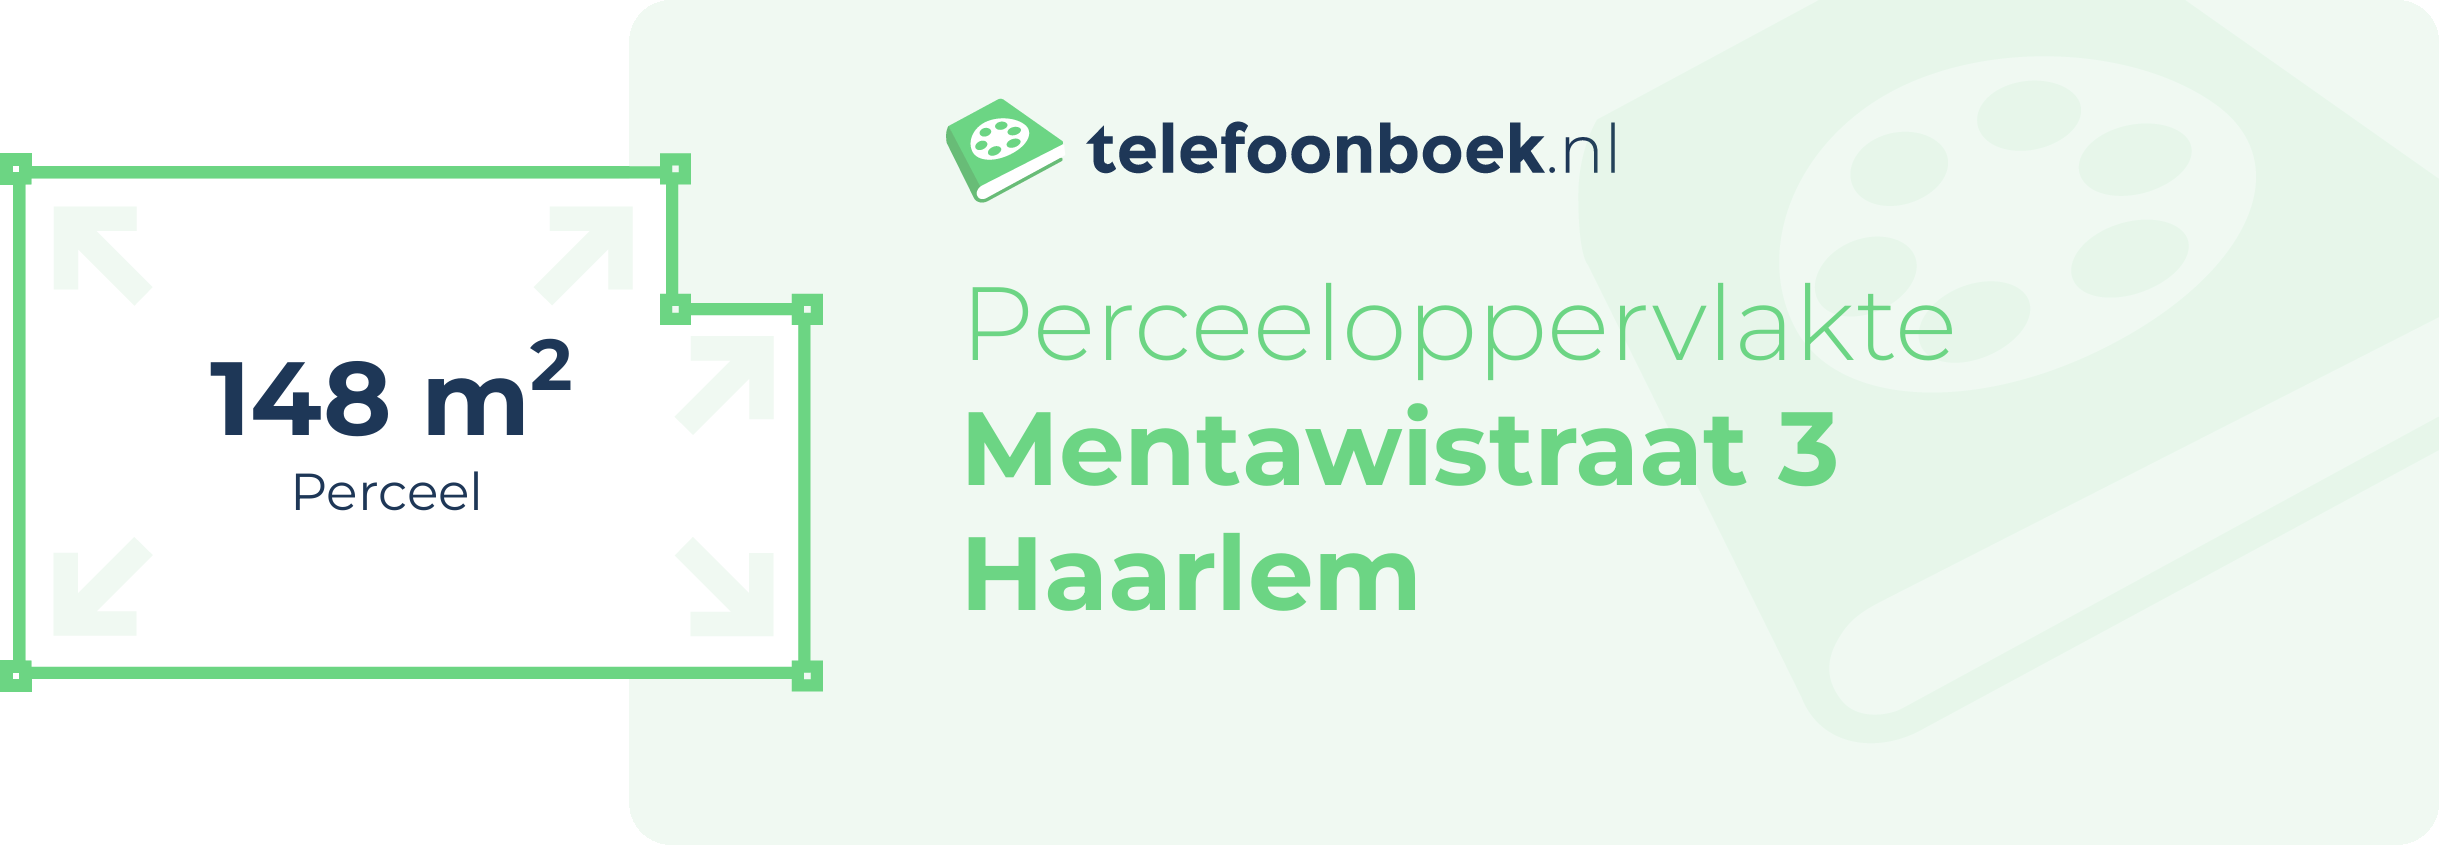 Perceeloppervlakte Mentawistraat 3 Haarlem